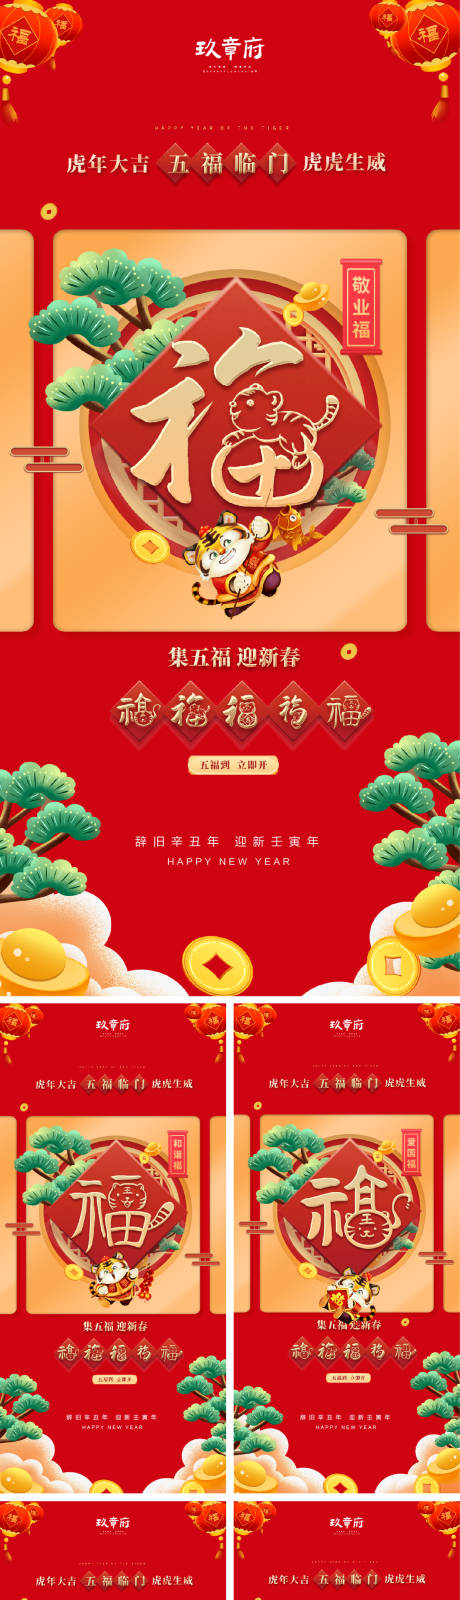 集五福春节系列海报